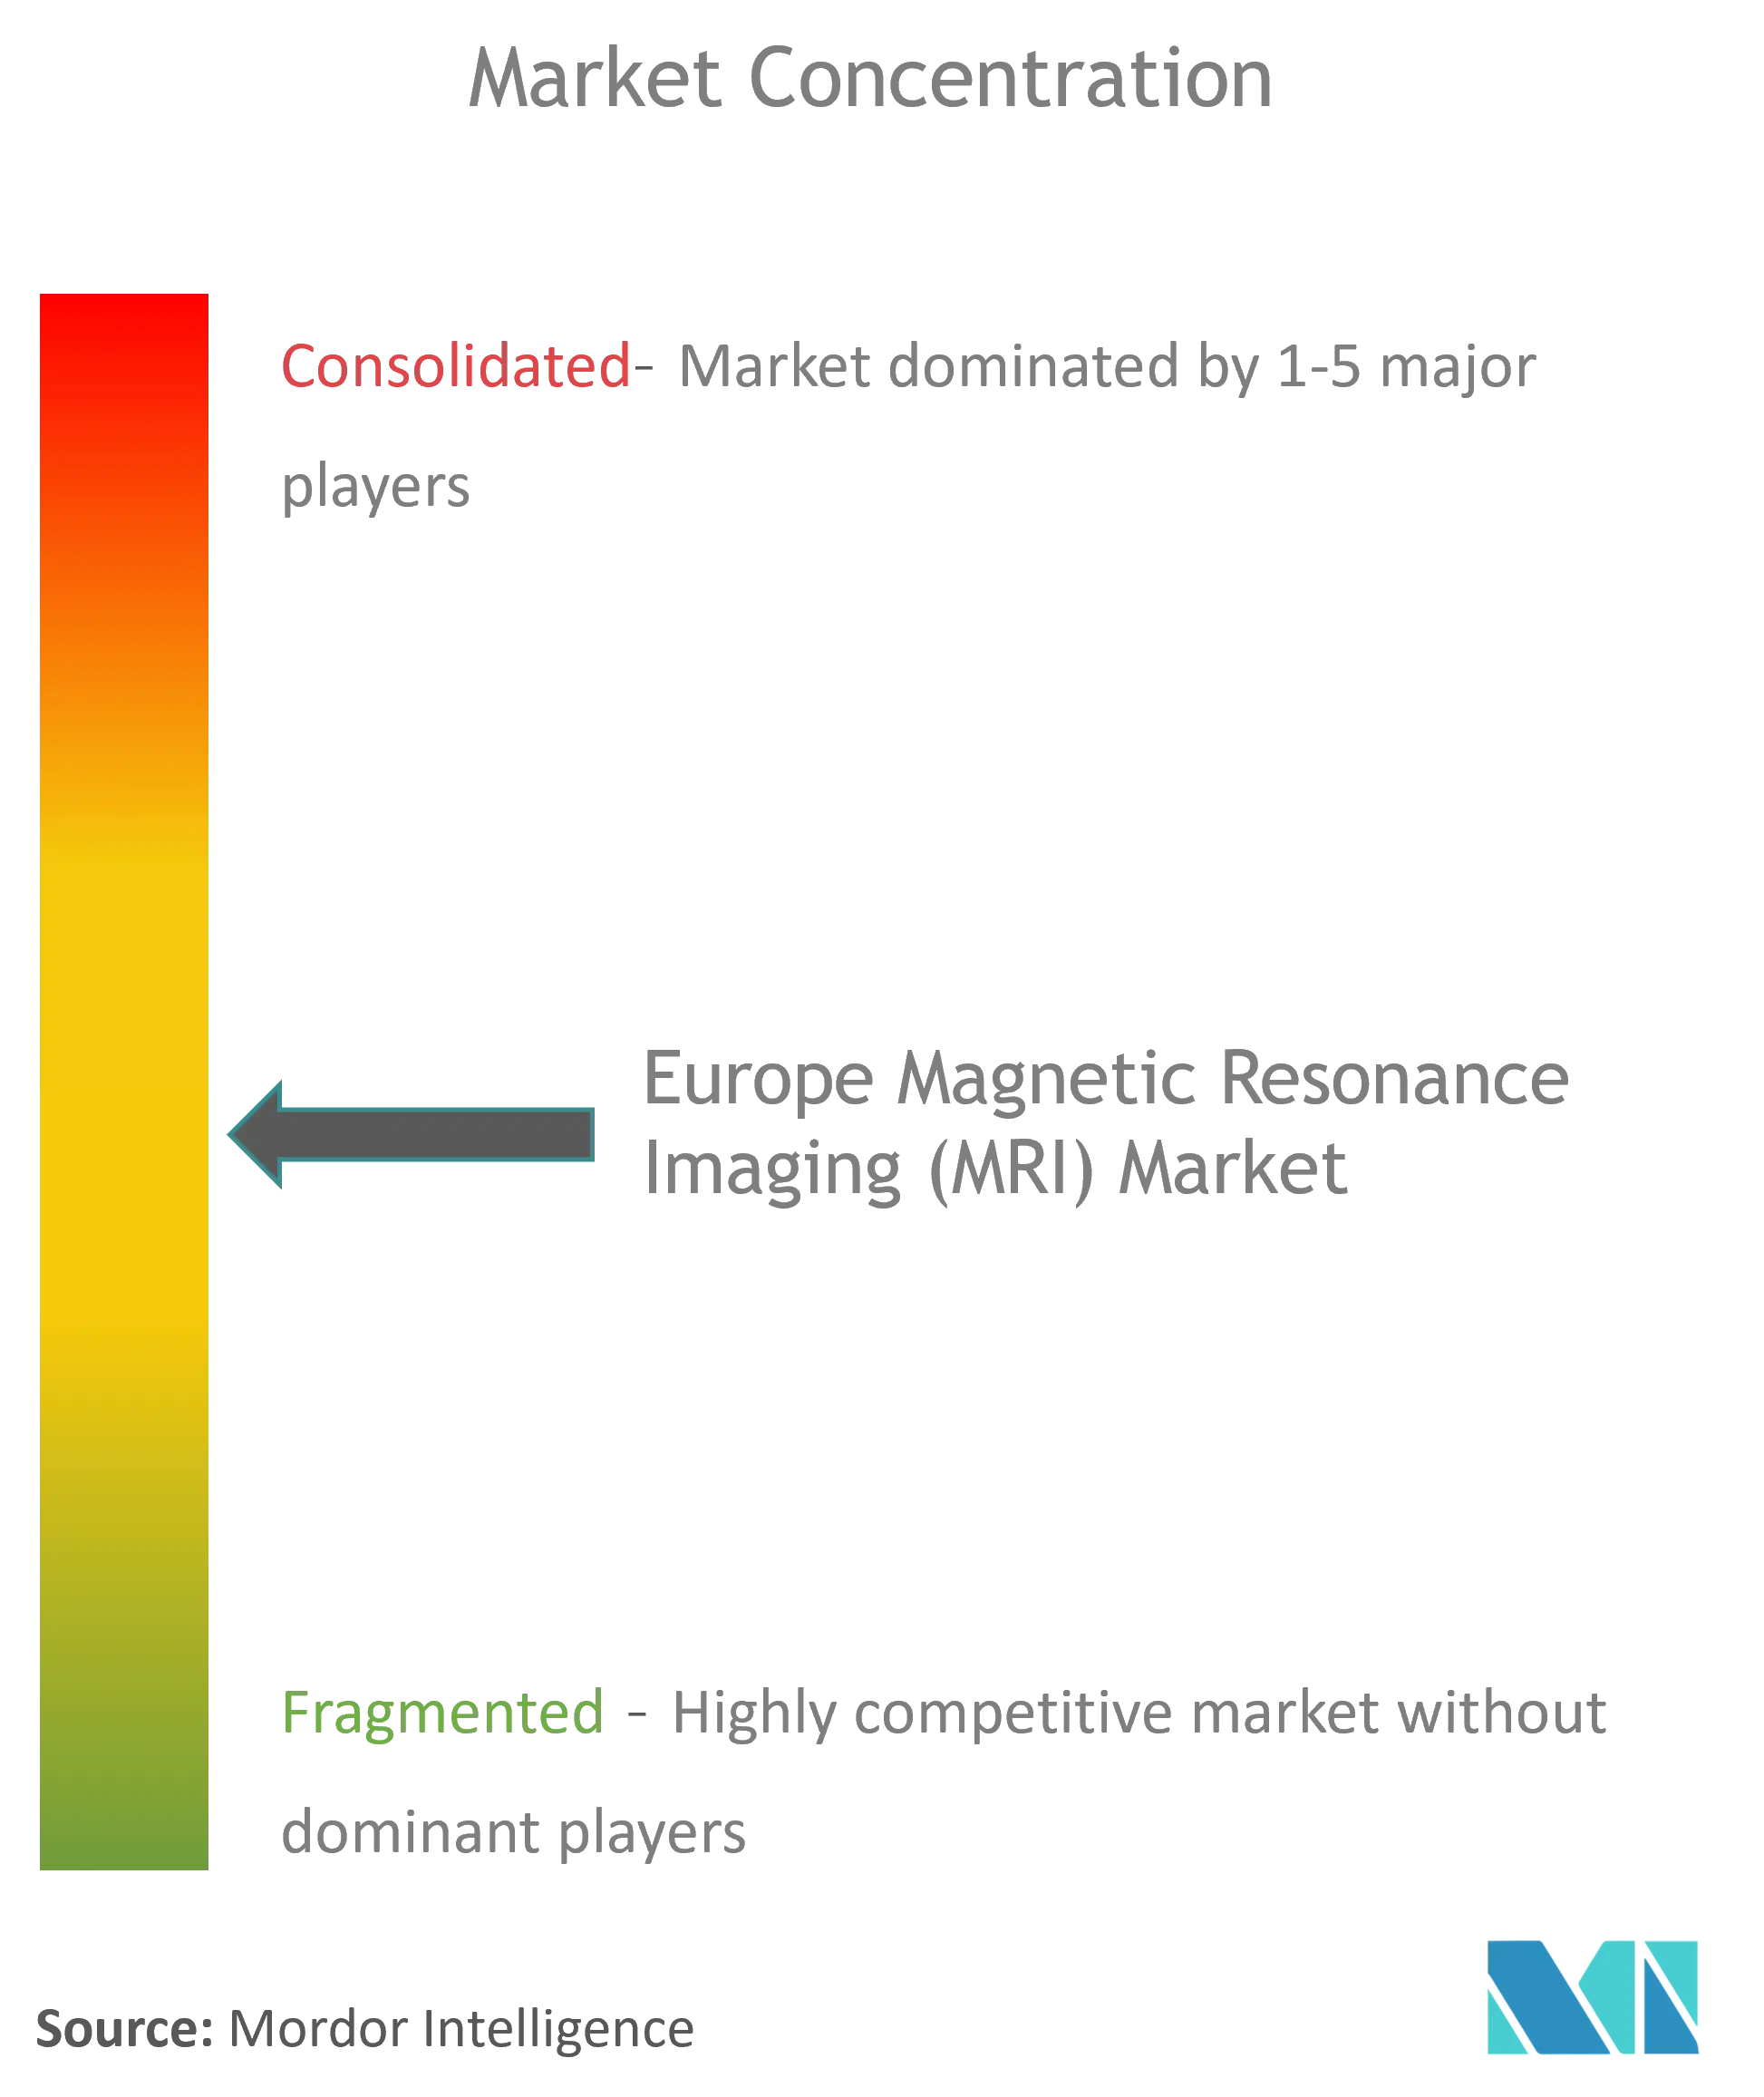 欧州磁気共鳴画像装置（MRI）市場集中度